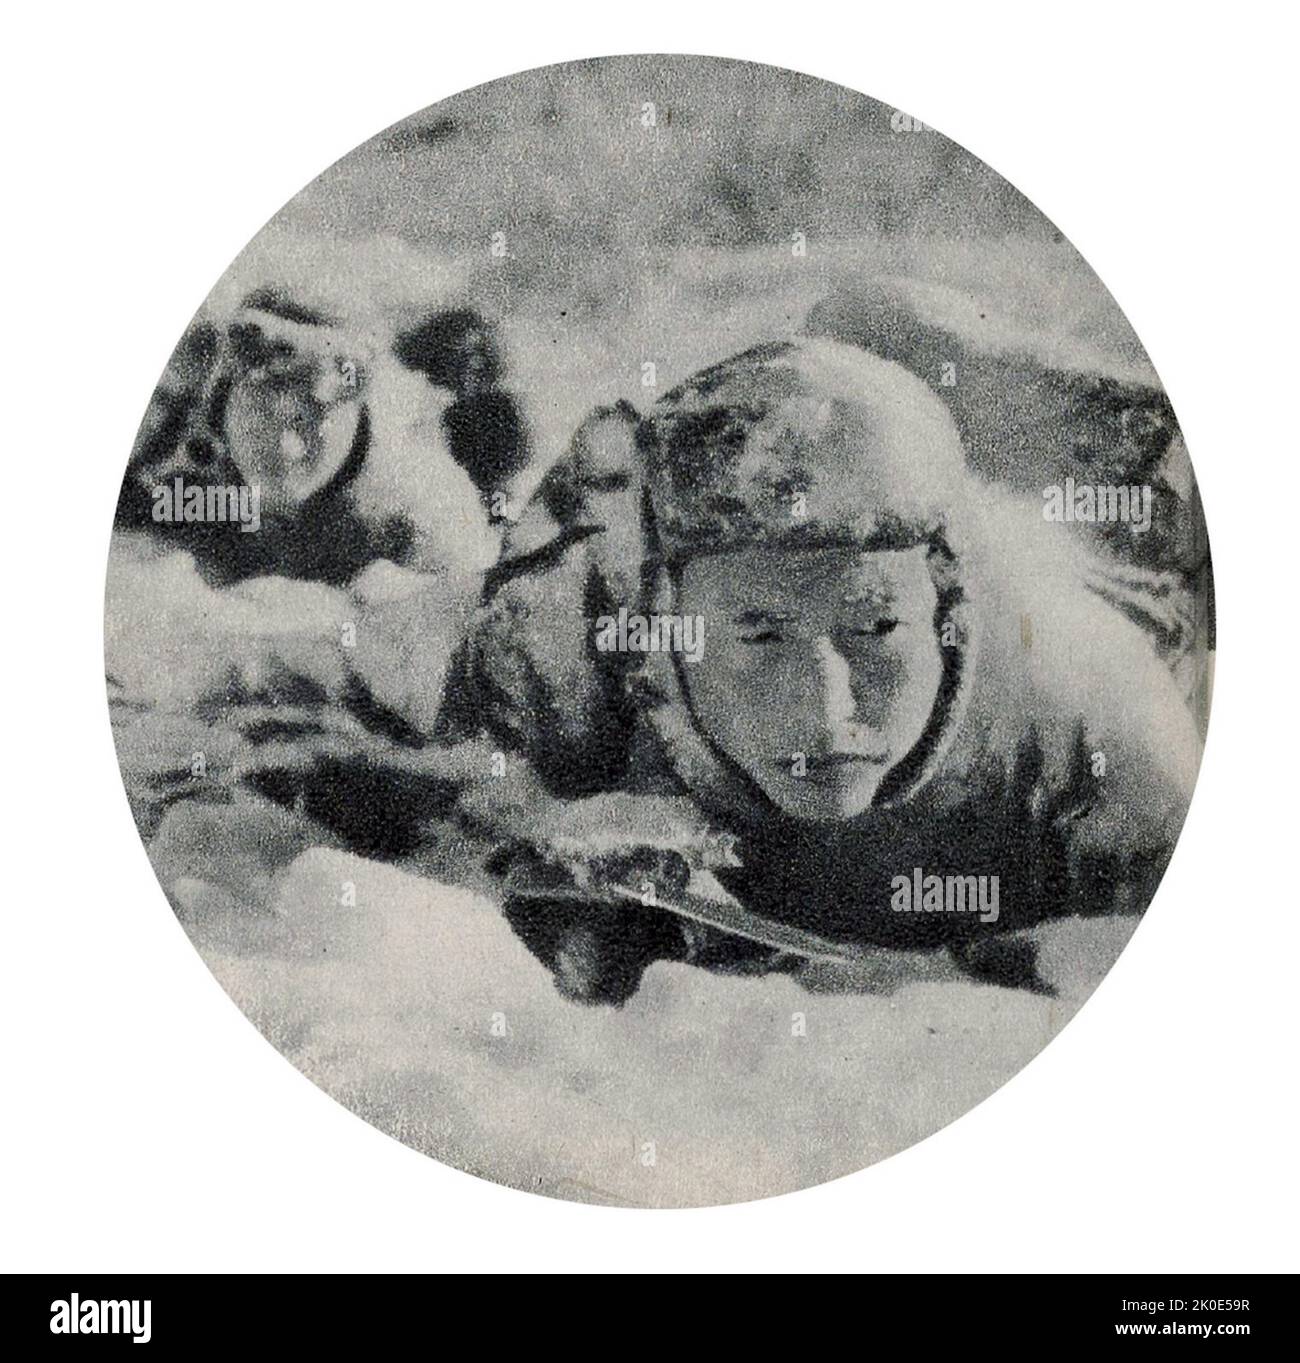 Photographie de propagande de l'armée nord-coréenne se préparant à défendre l'État contre l'invasion ou l'attaque. 1963. Banque D'Images